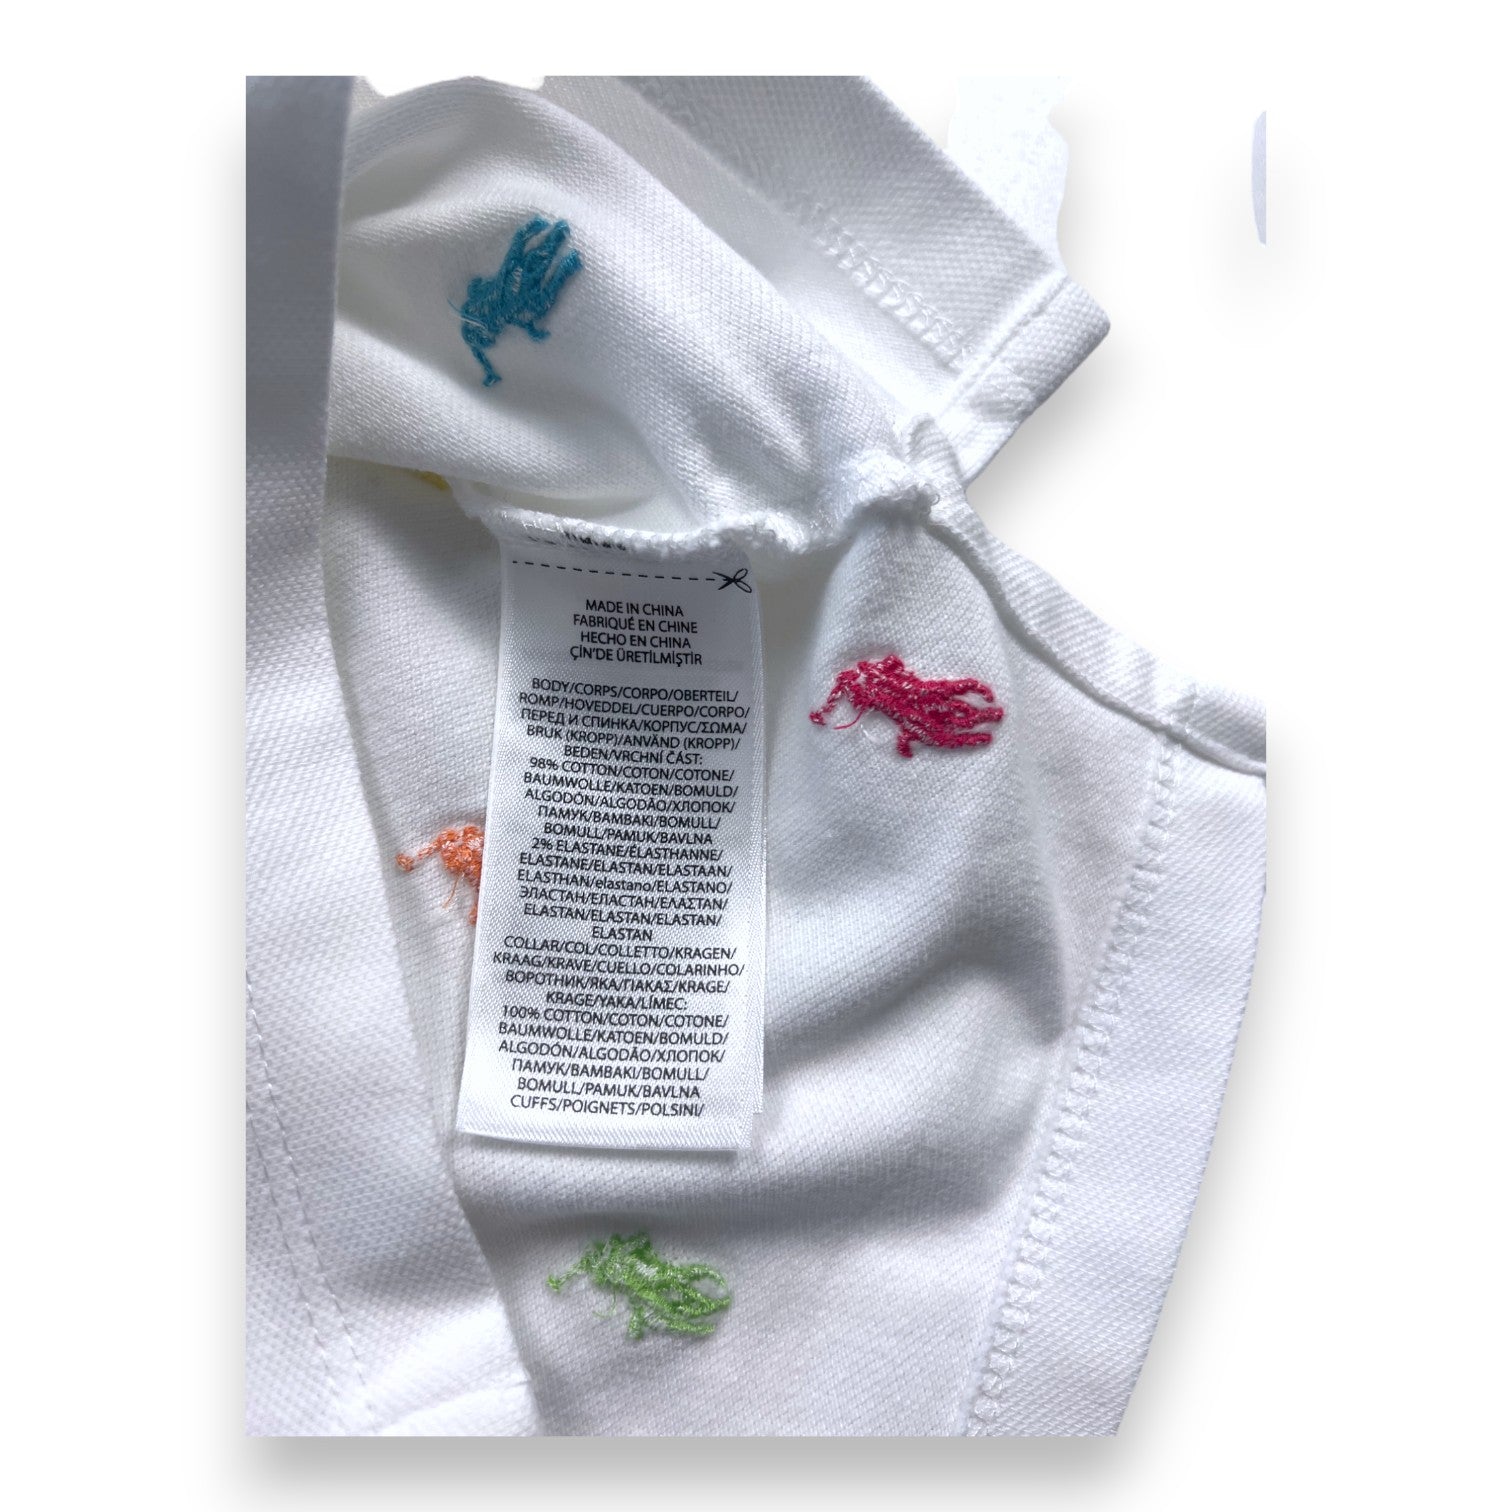 RALPH LAUREN - Polo blanc à logos colorés brodés - 2 ans